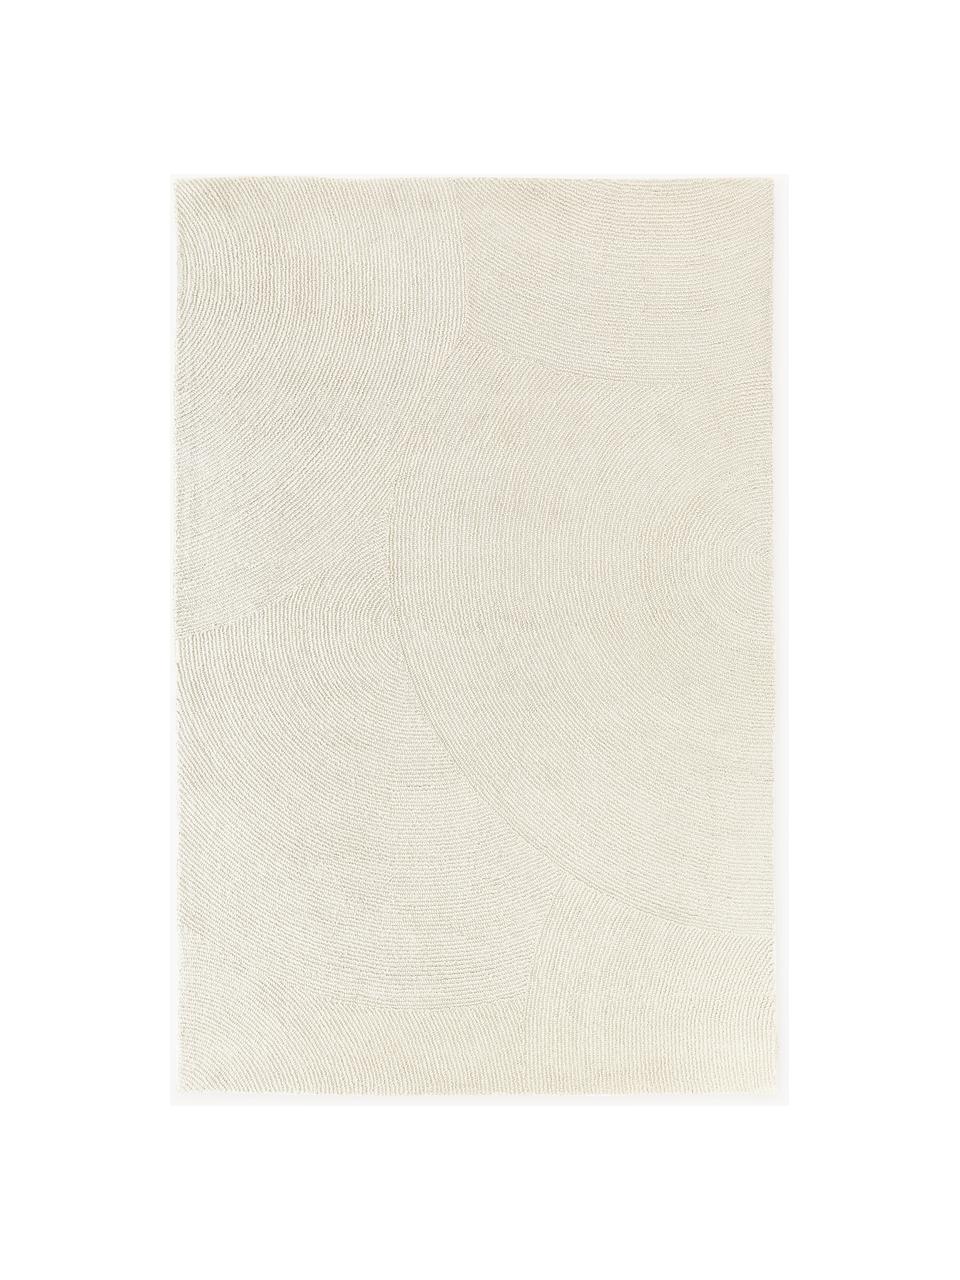 Handgetuft laagpolig vloerkleed Eleni van gerecyclede materialen, Bovenzijde: 100% polyester, Gebroken wit, B 120 x L 180 cm (maat S)